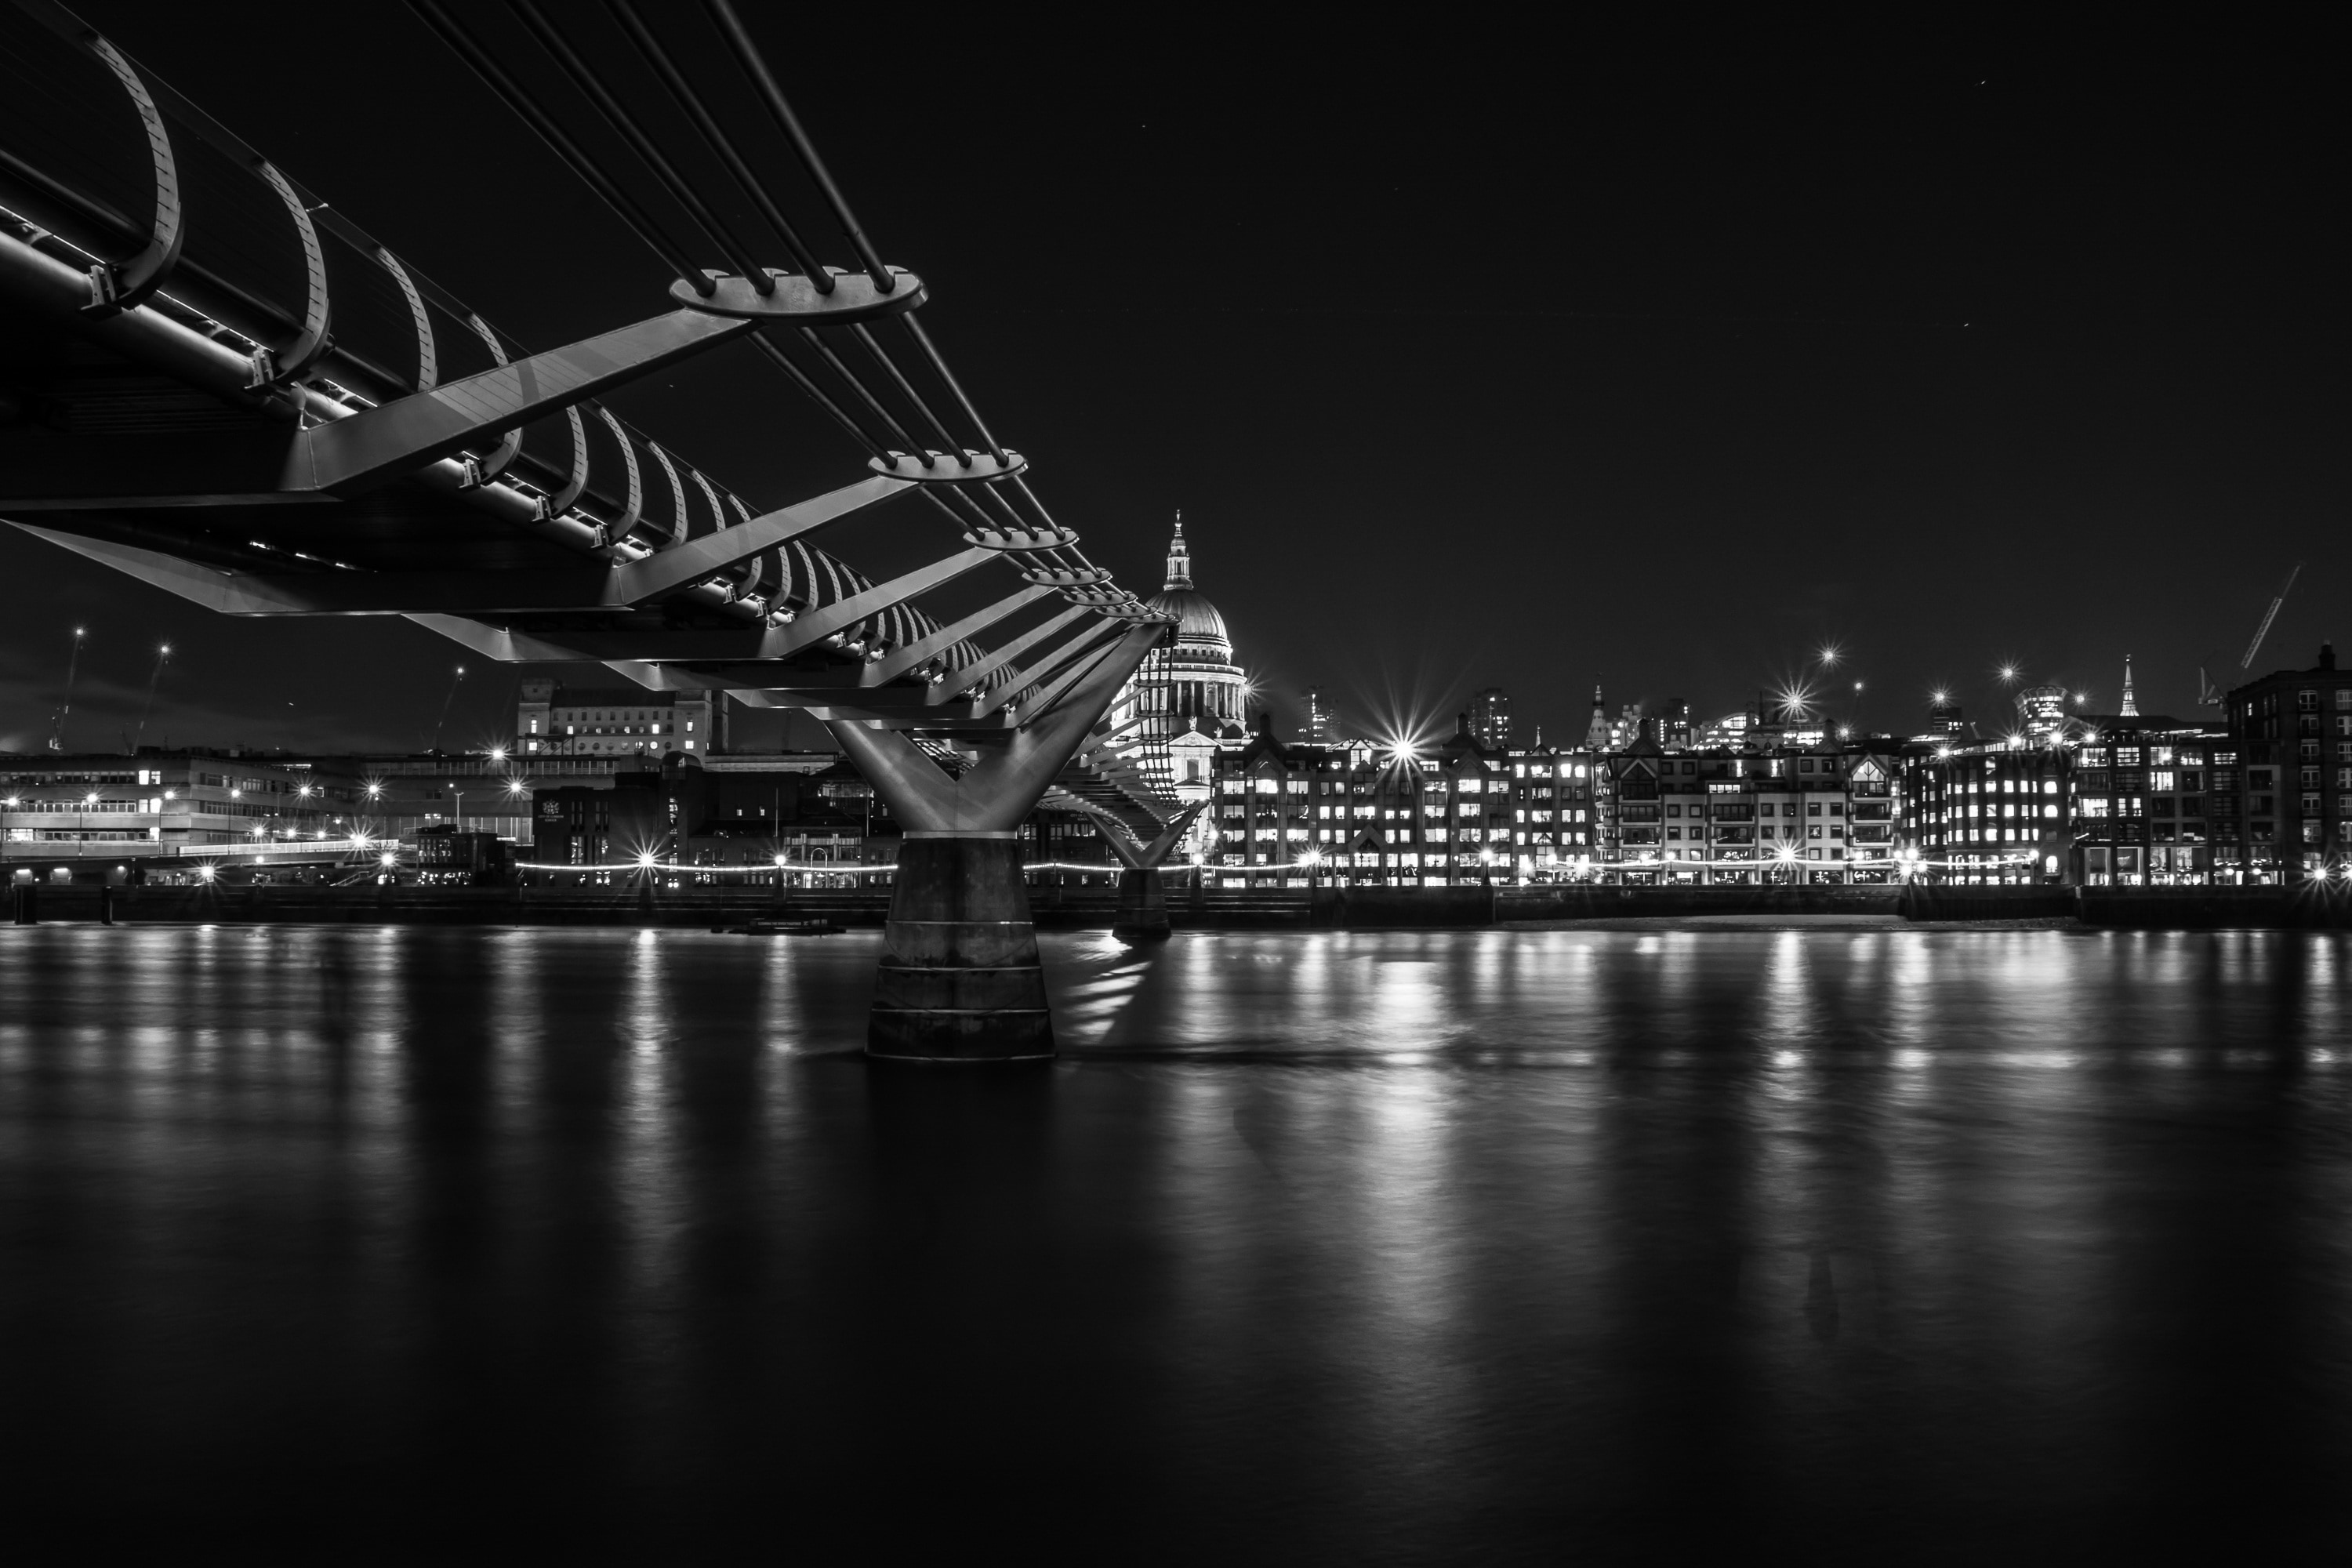 London, City, Millennium, Bridge, night, illuminated